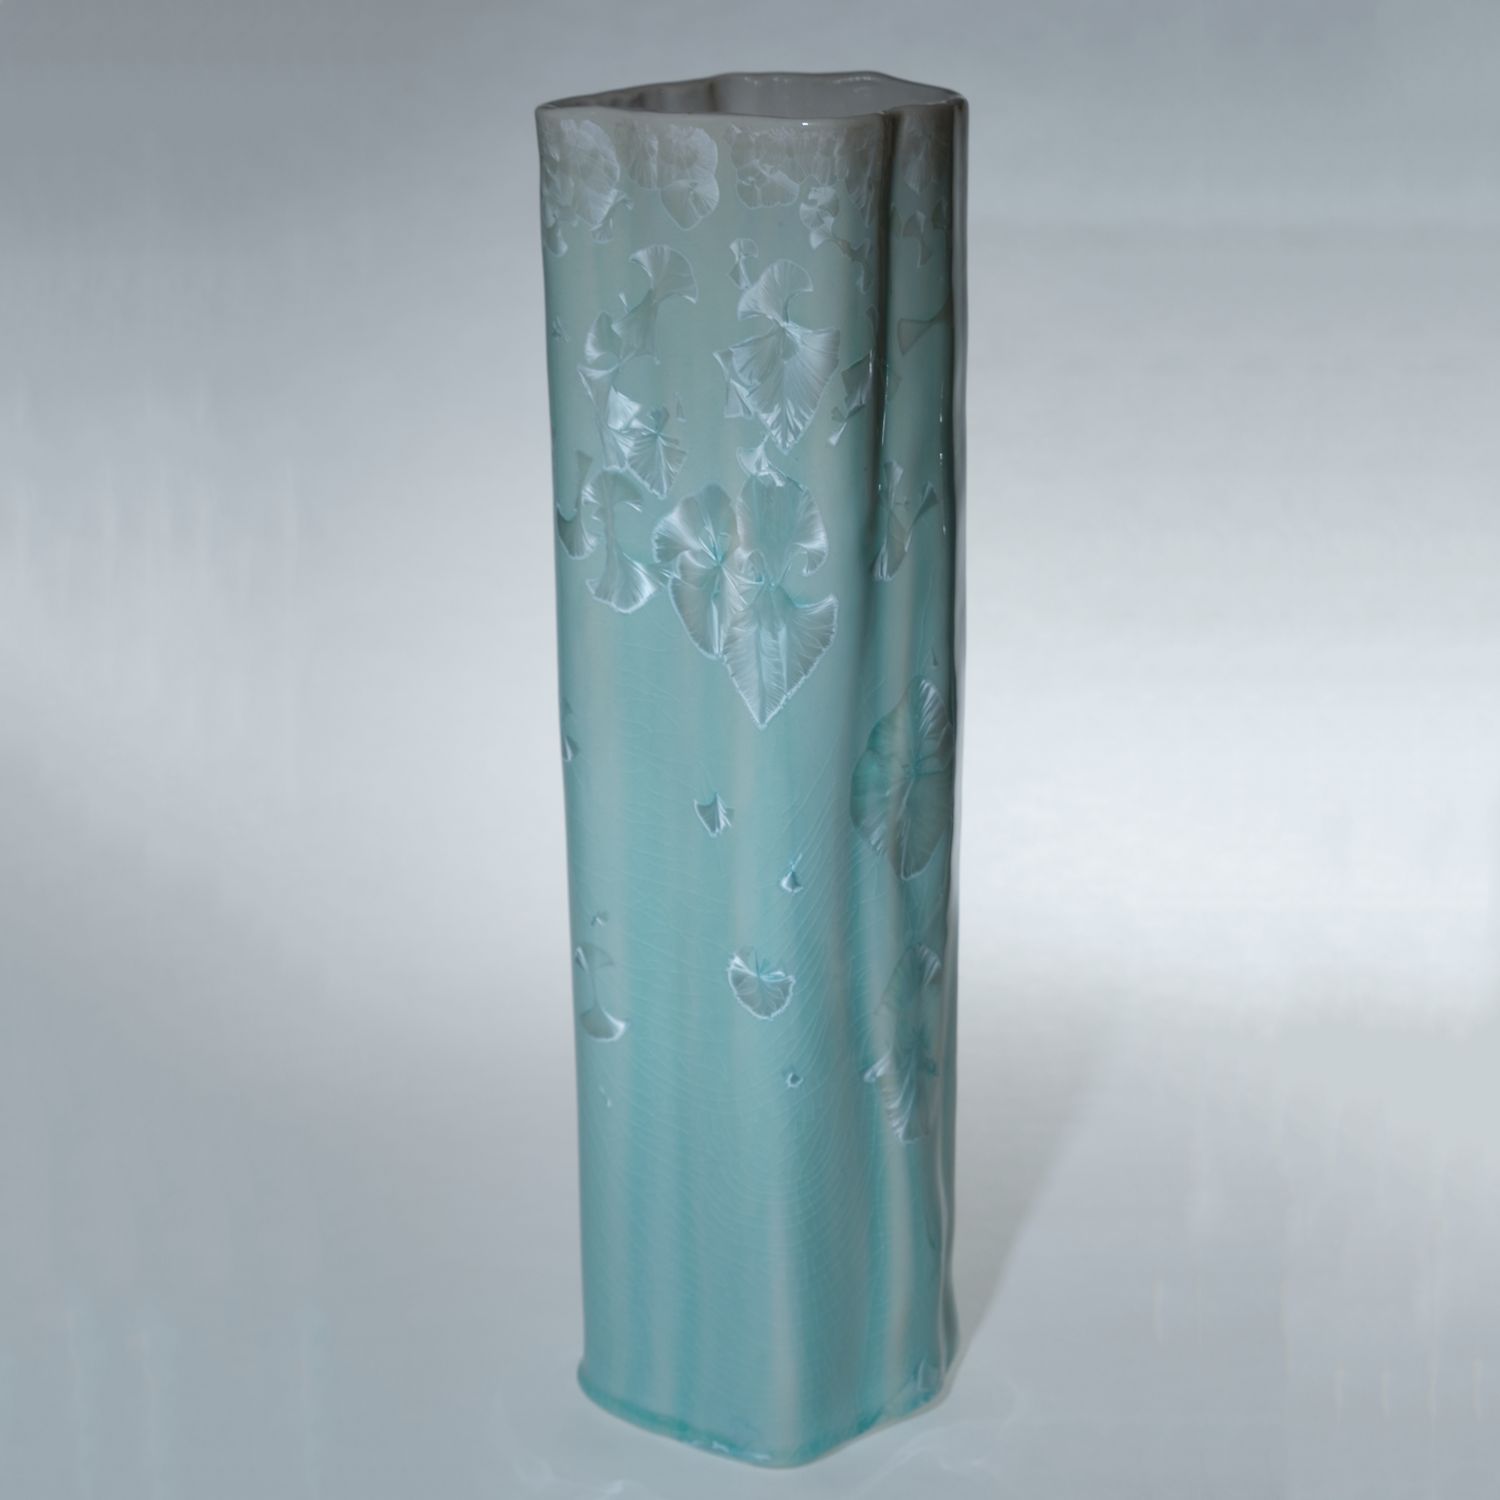 Yumiko Katsuya: Tall Vase – Turquoise Product Image 1 of 1